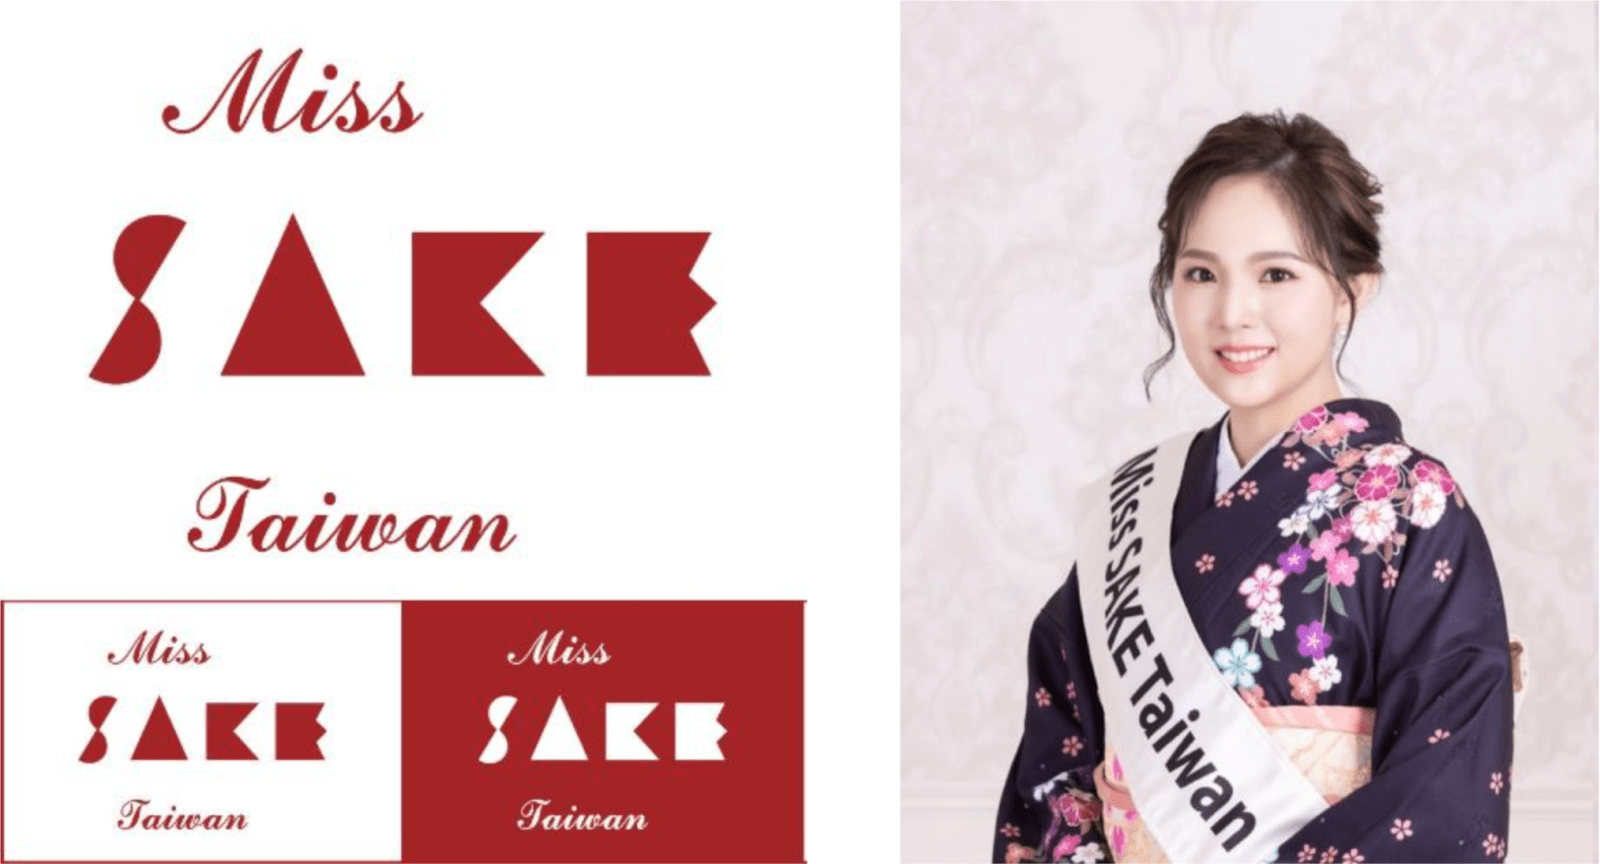 2021 Miss SAKE Taiwan 冠軍林立明（Mei）出席擔任親善大使